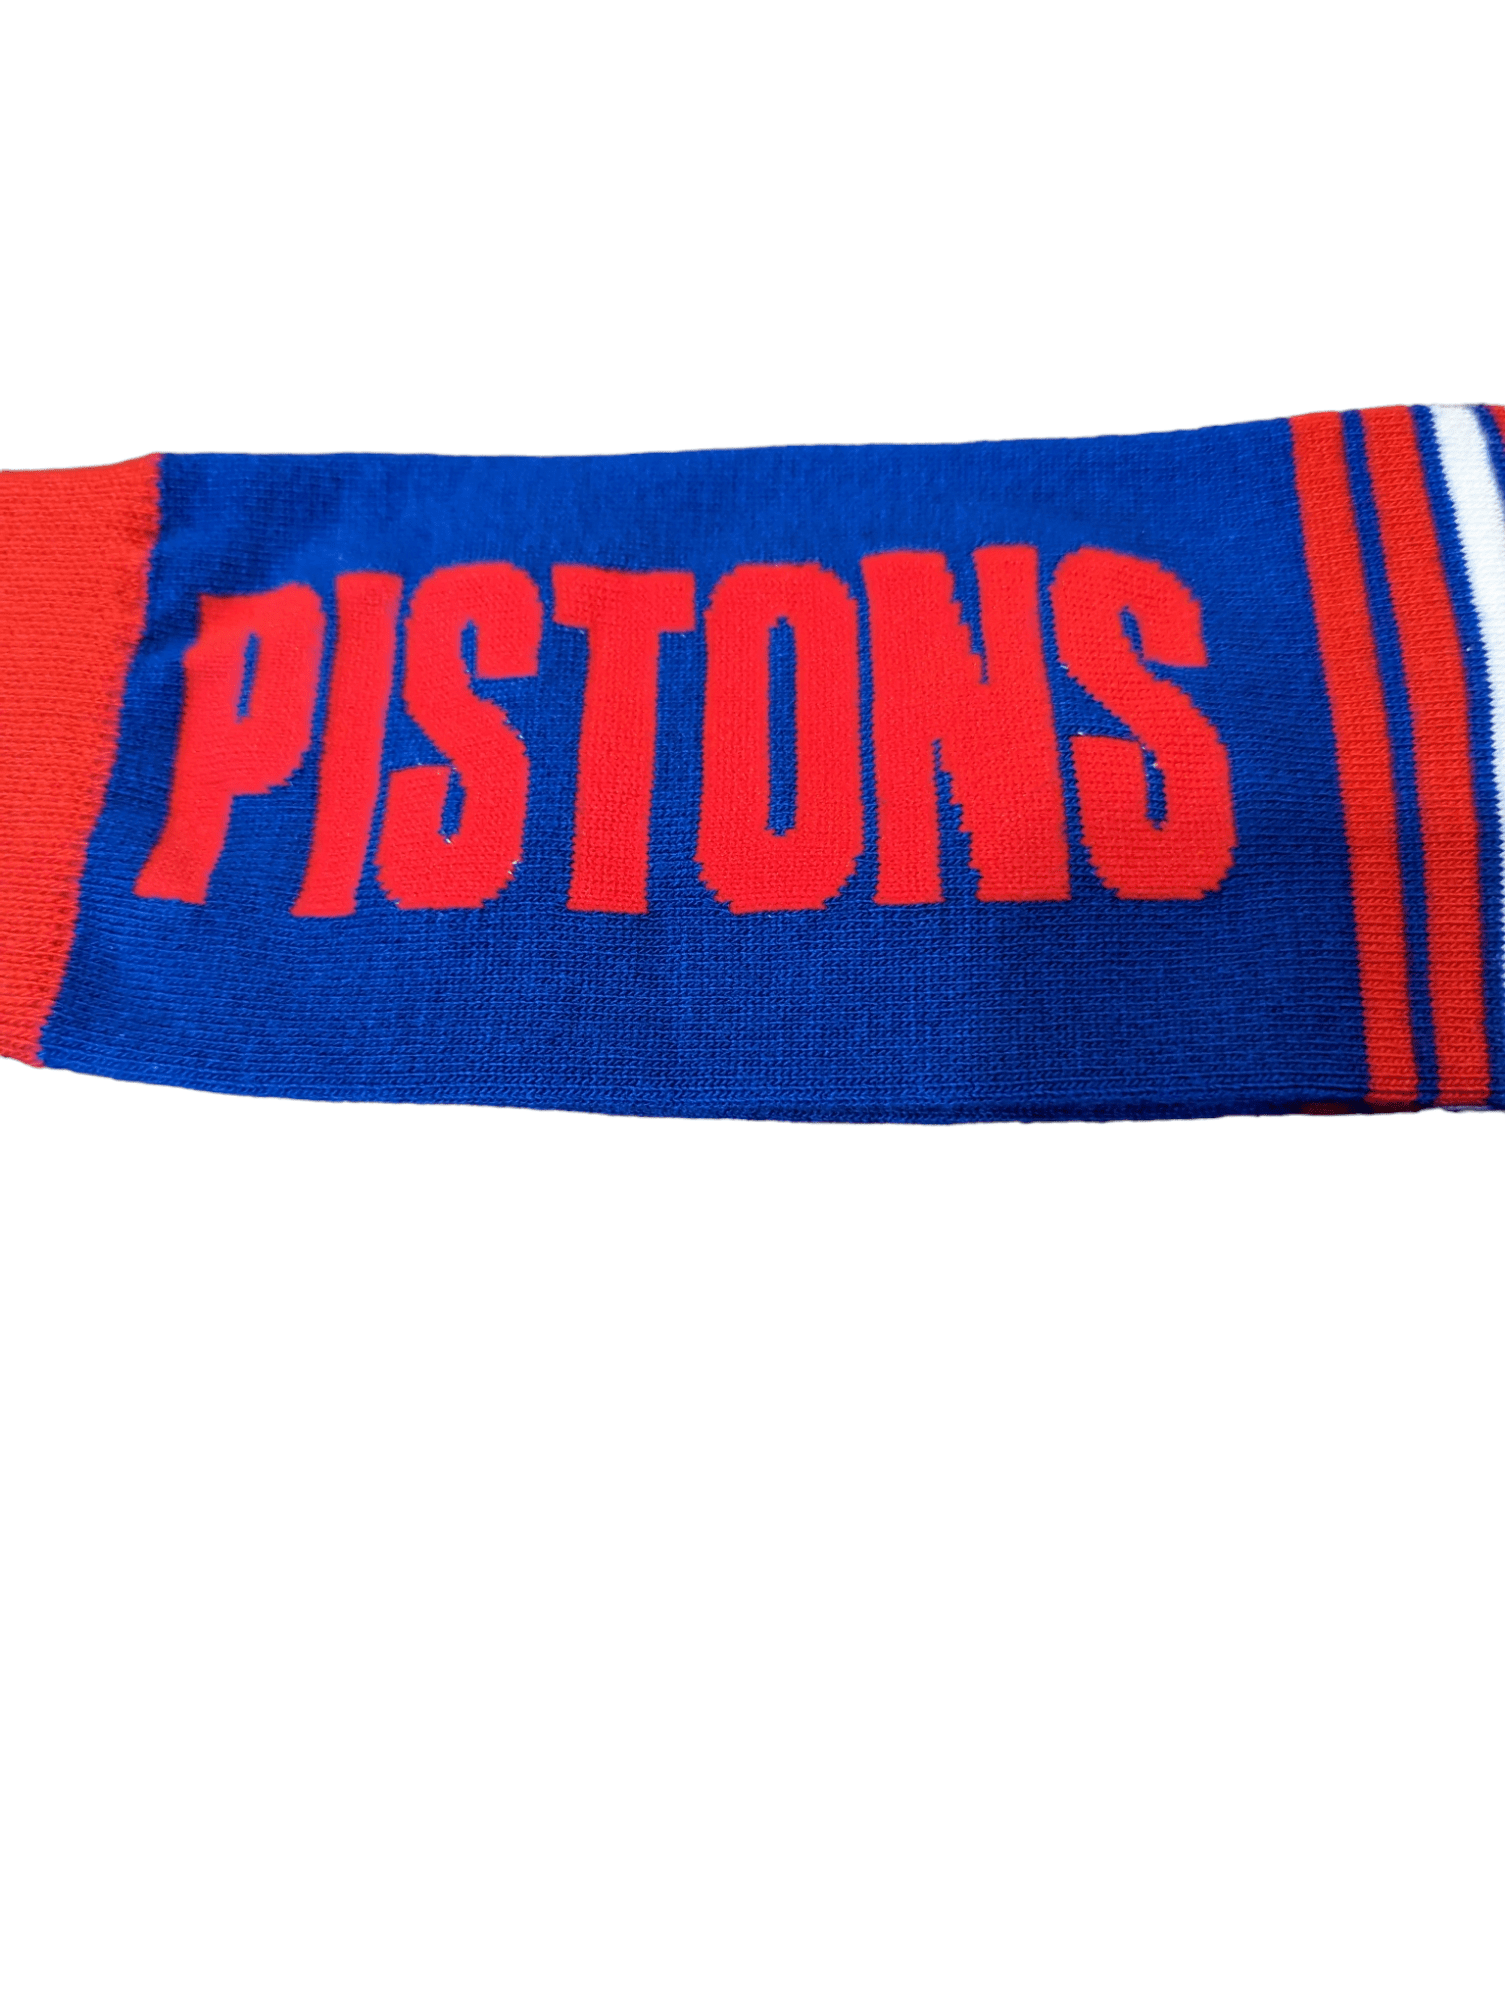 For Bare Feet Socks Detroit Pistons Go Team Socks